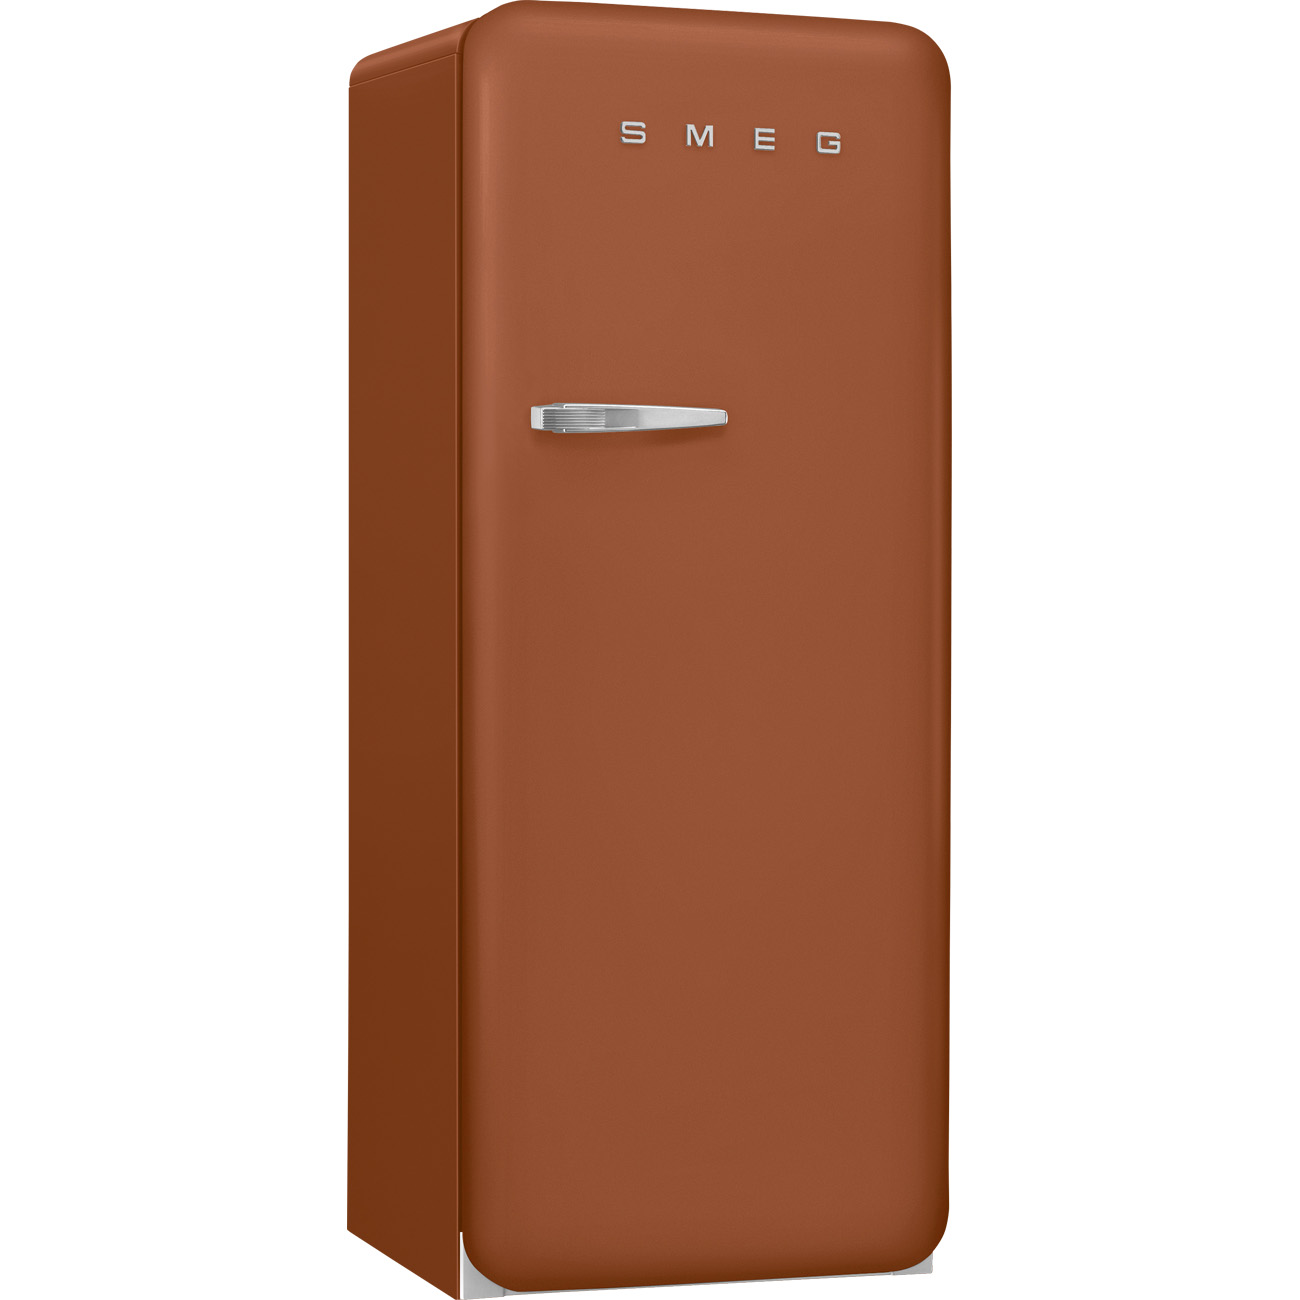 Rust Retro-Kühlschränke von Smeg_3